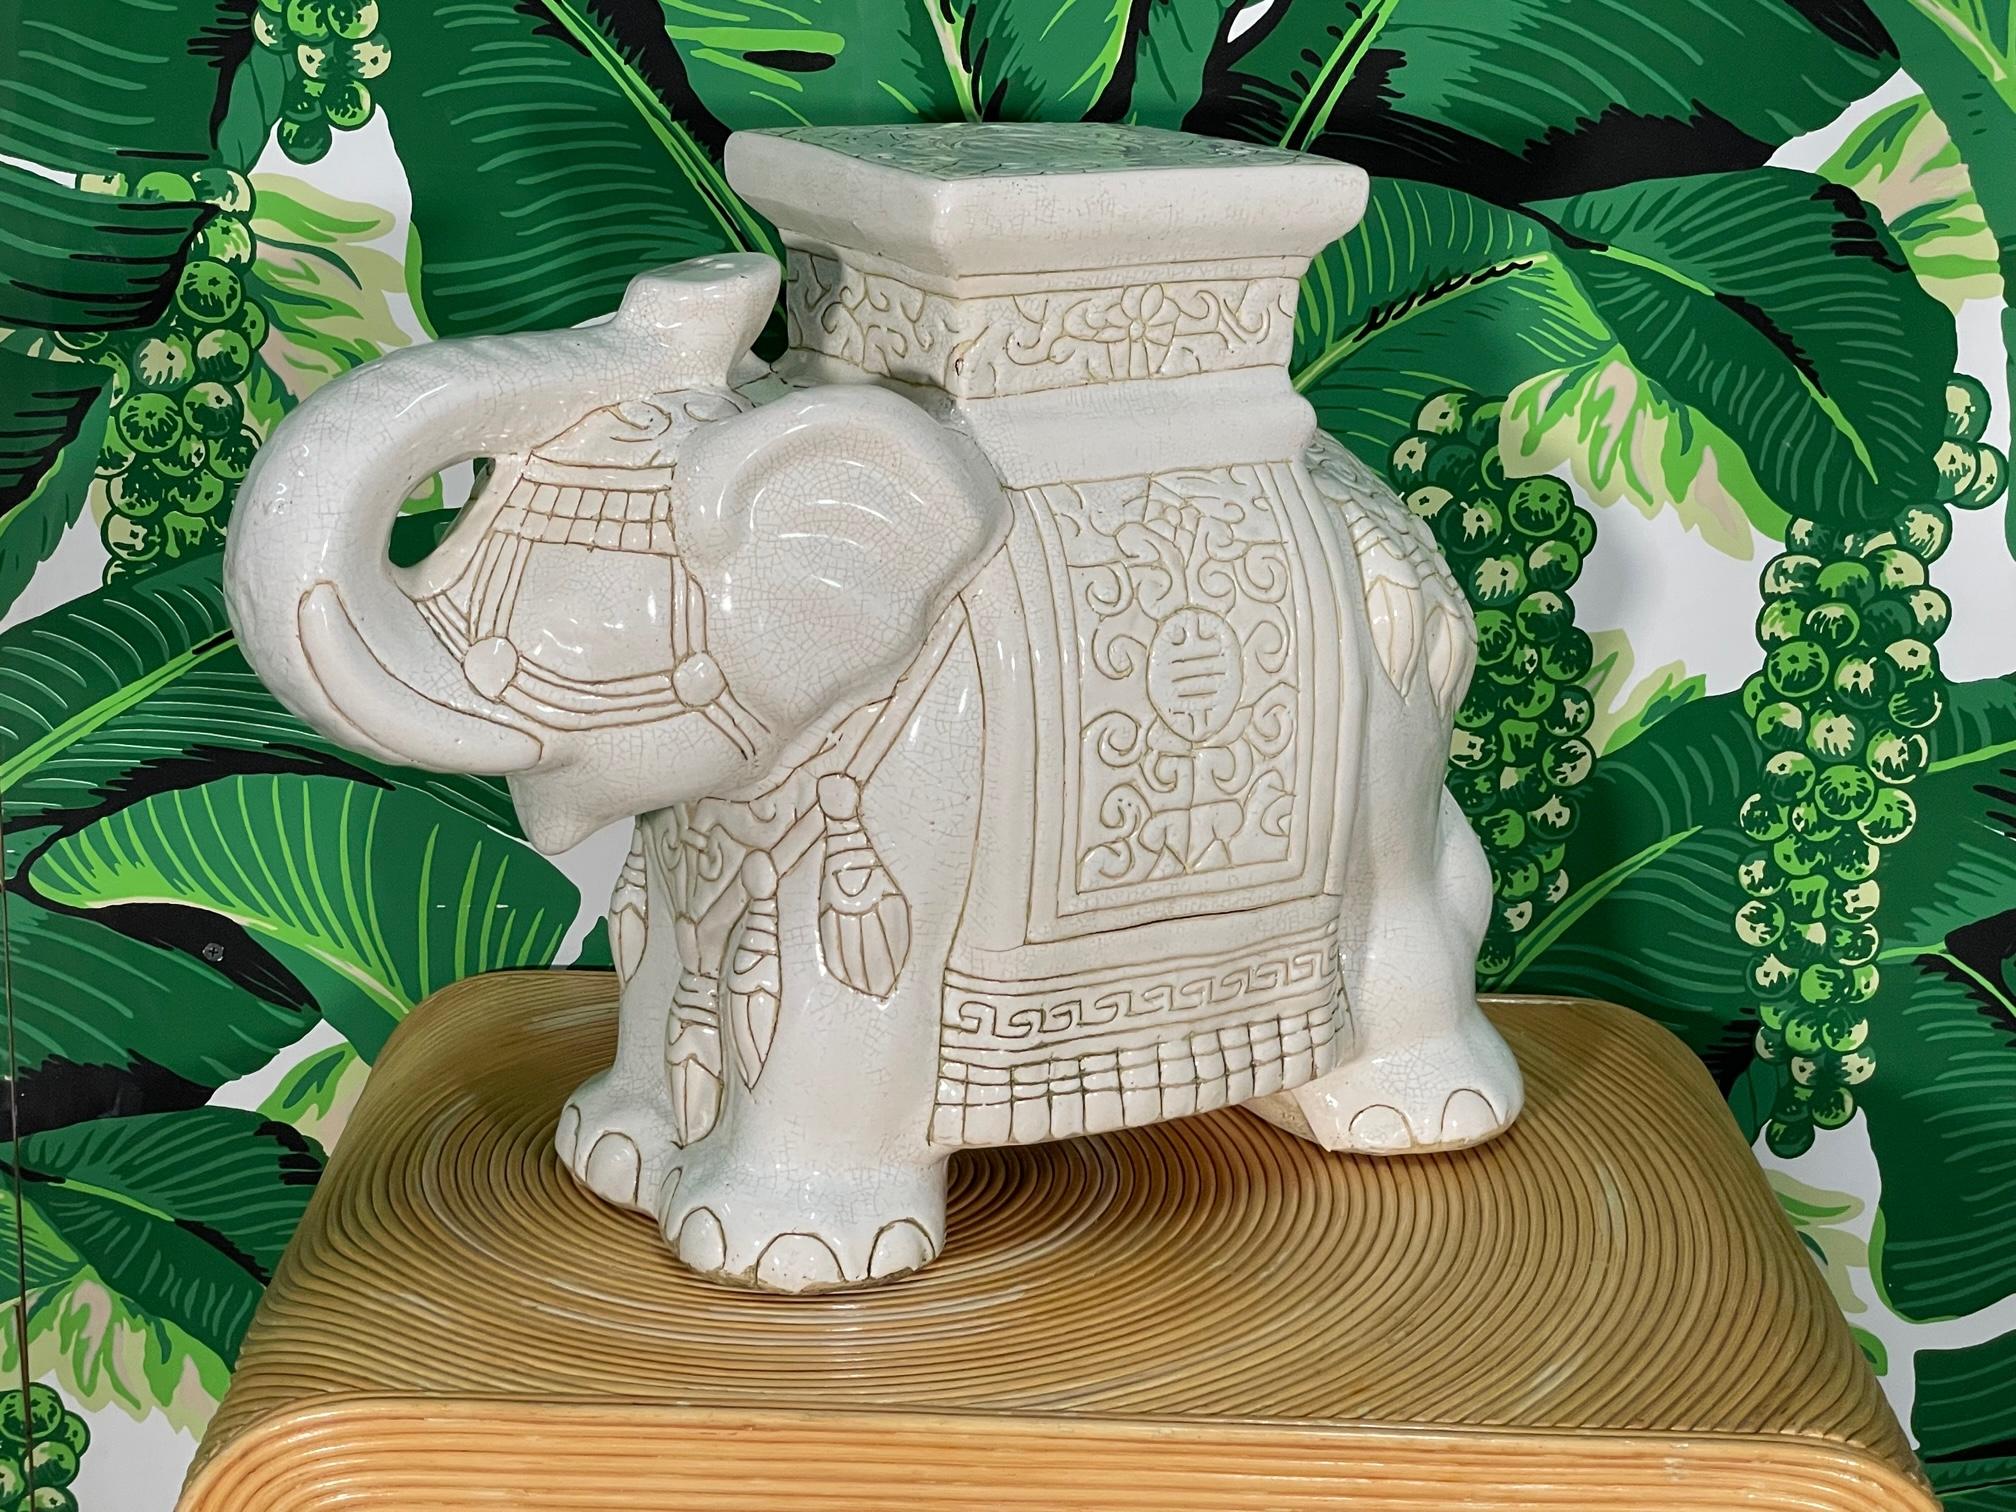 Keramischer Elefanten-Gartensitz (oder Beistelltisch für Cocktails) mit glänzender, glasierter Oberfläche und erhöhtem Rüssel als Glücksbringer. Guter Zustand mit altersbedingten Unvollkommenheiten, siehe Fotos für Zustandsdetails.

